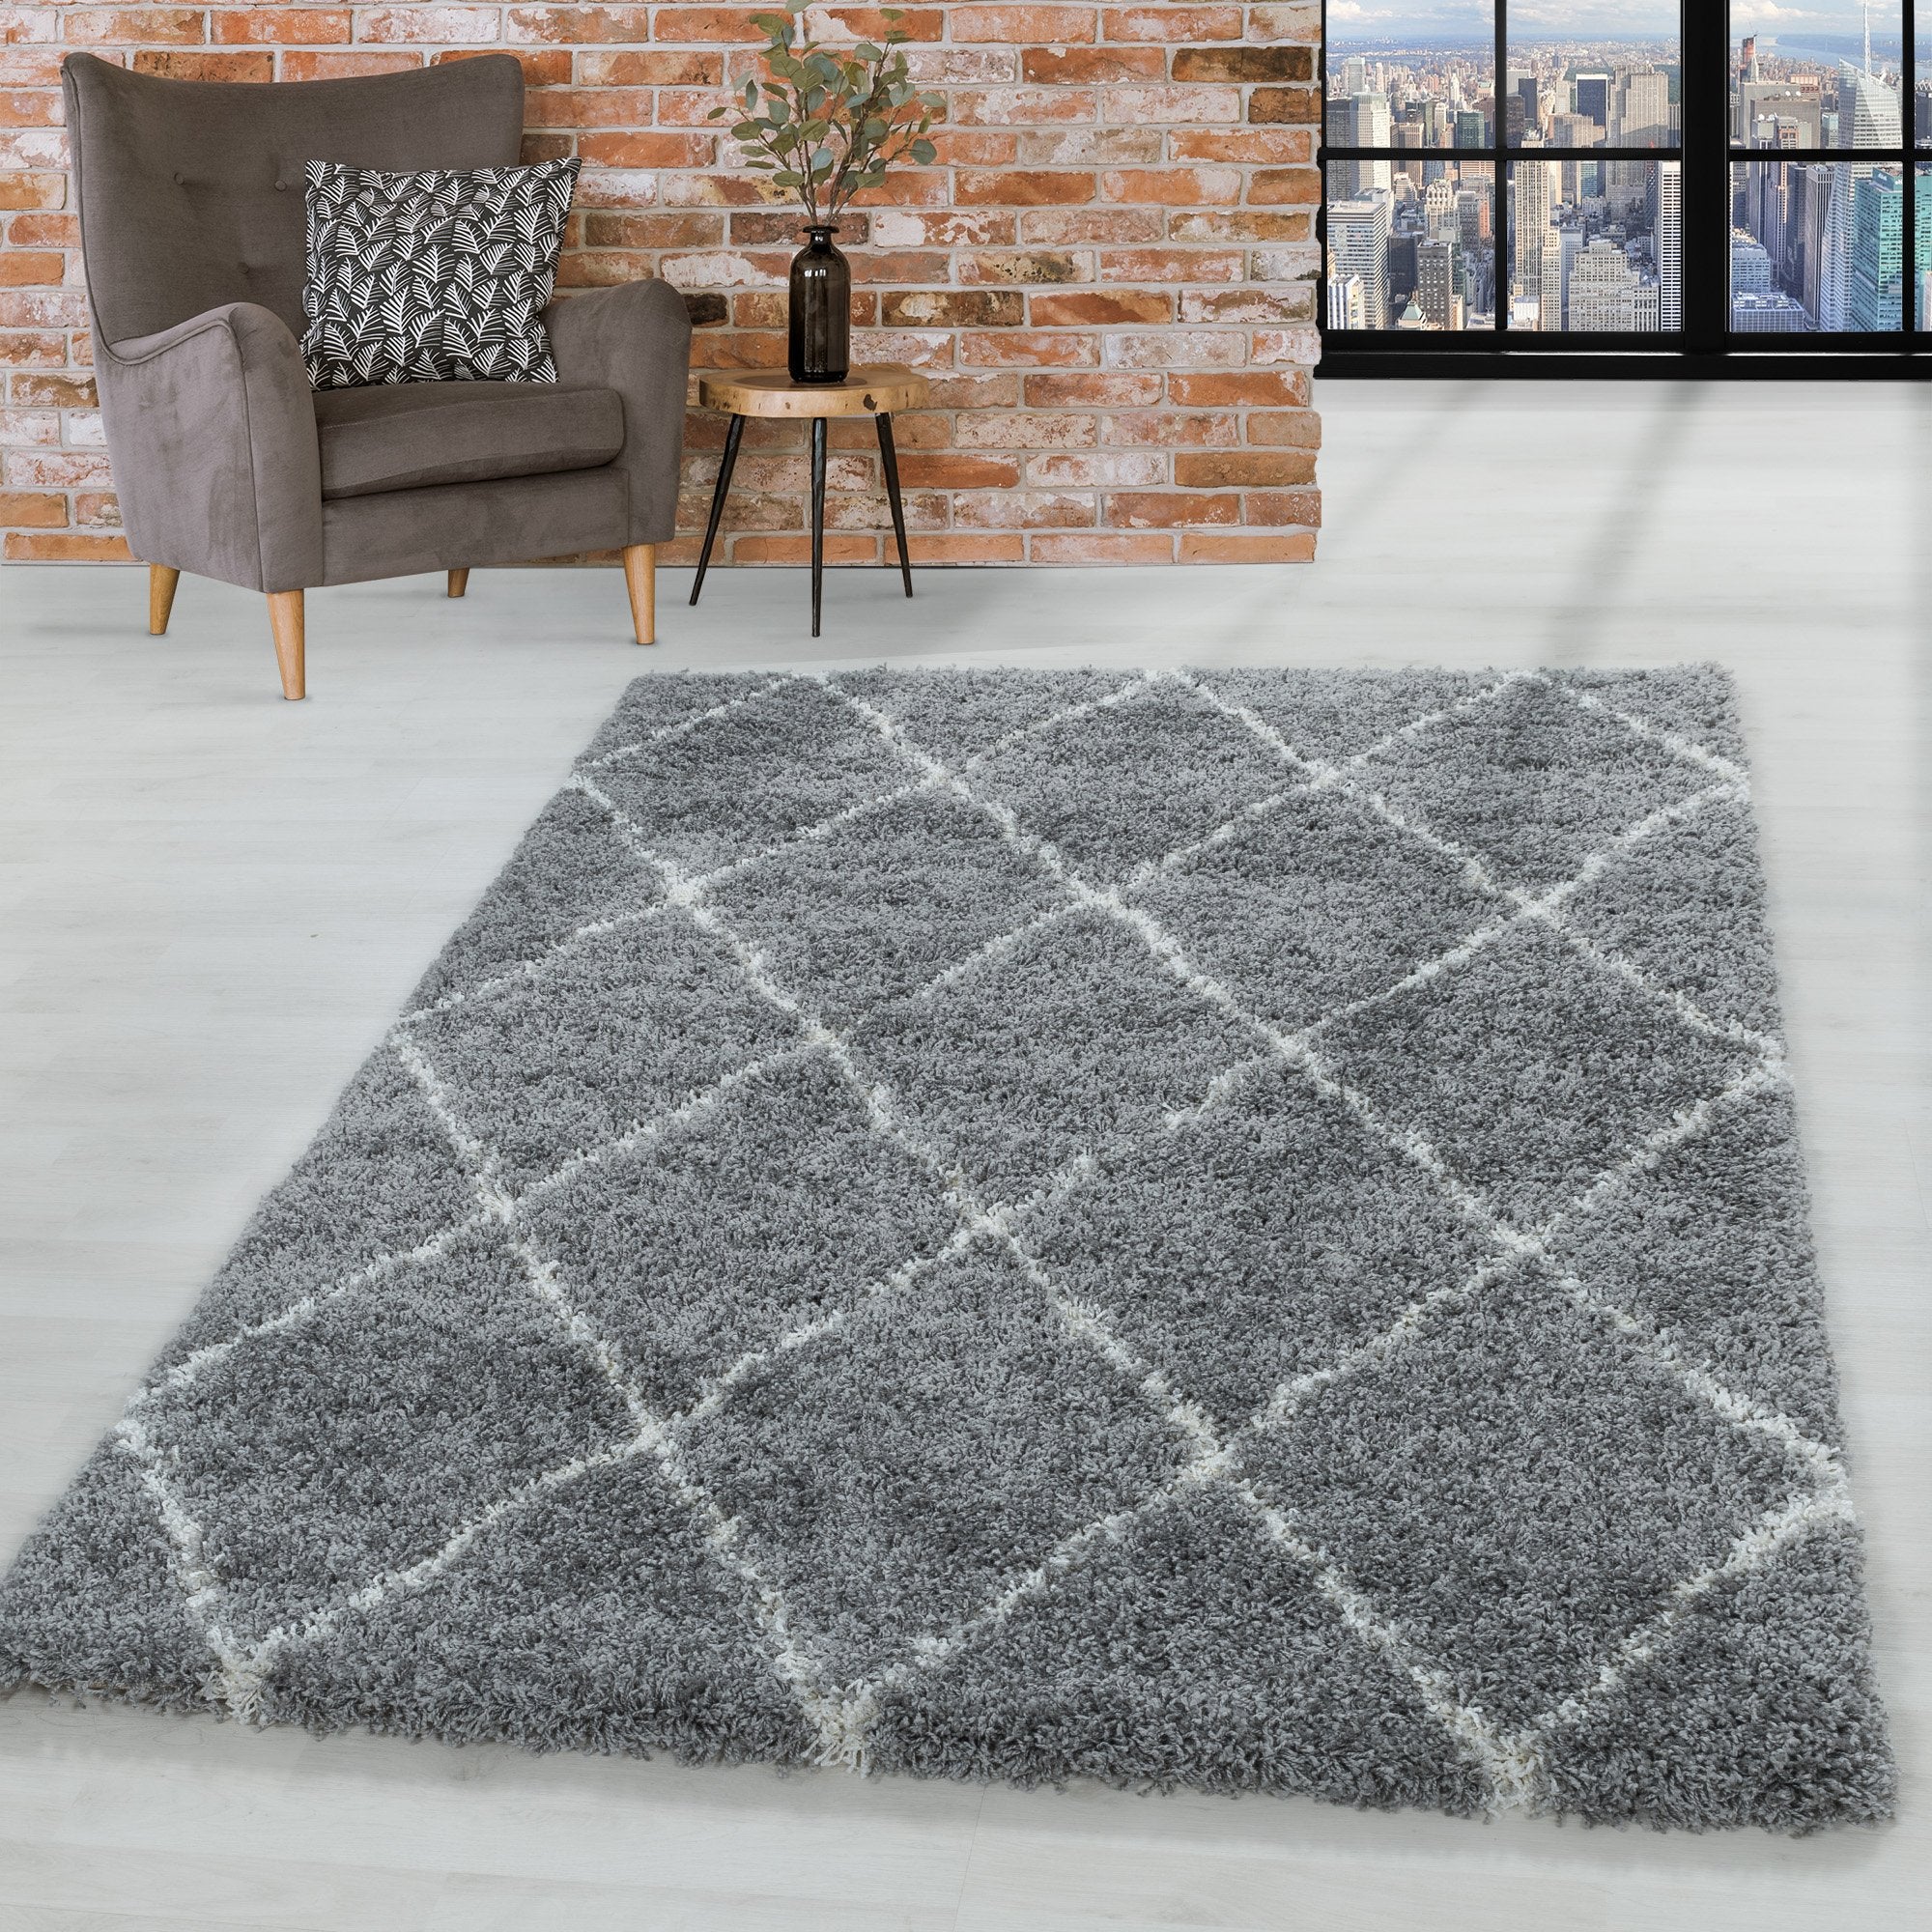 Design Hochflor Teppich Wohnzimmerteppich Muster Raute Flor Weich Farbe Grau